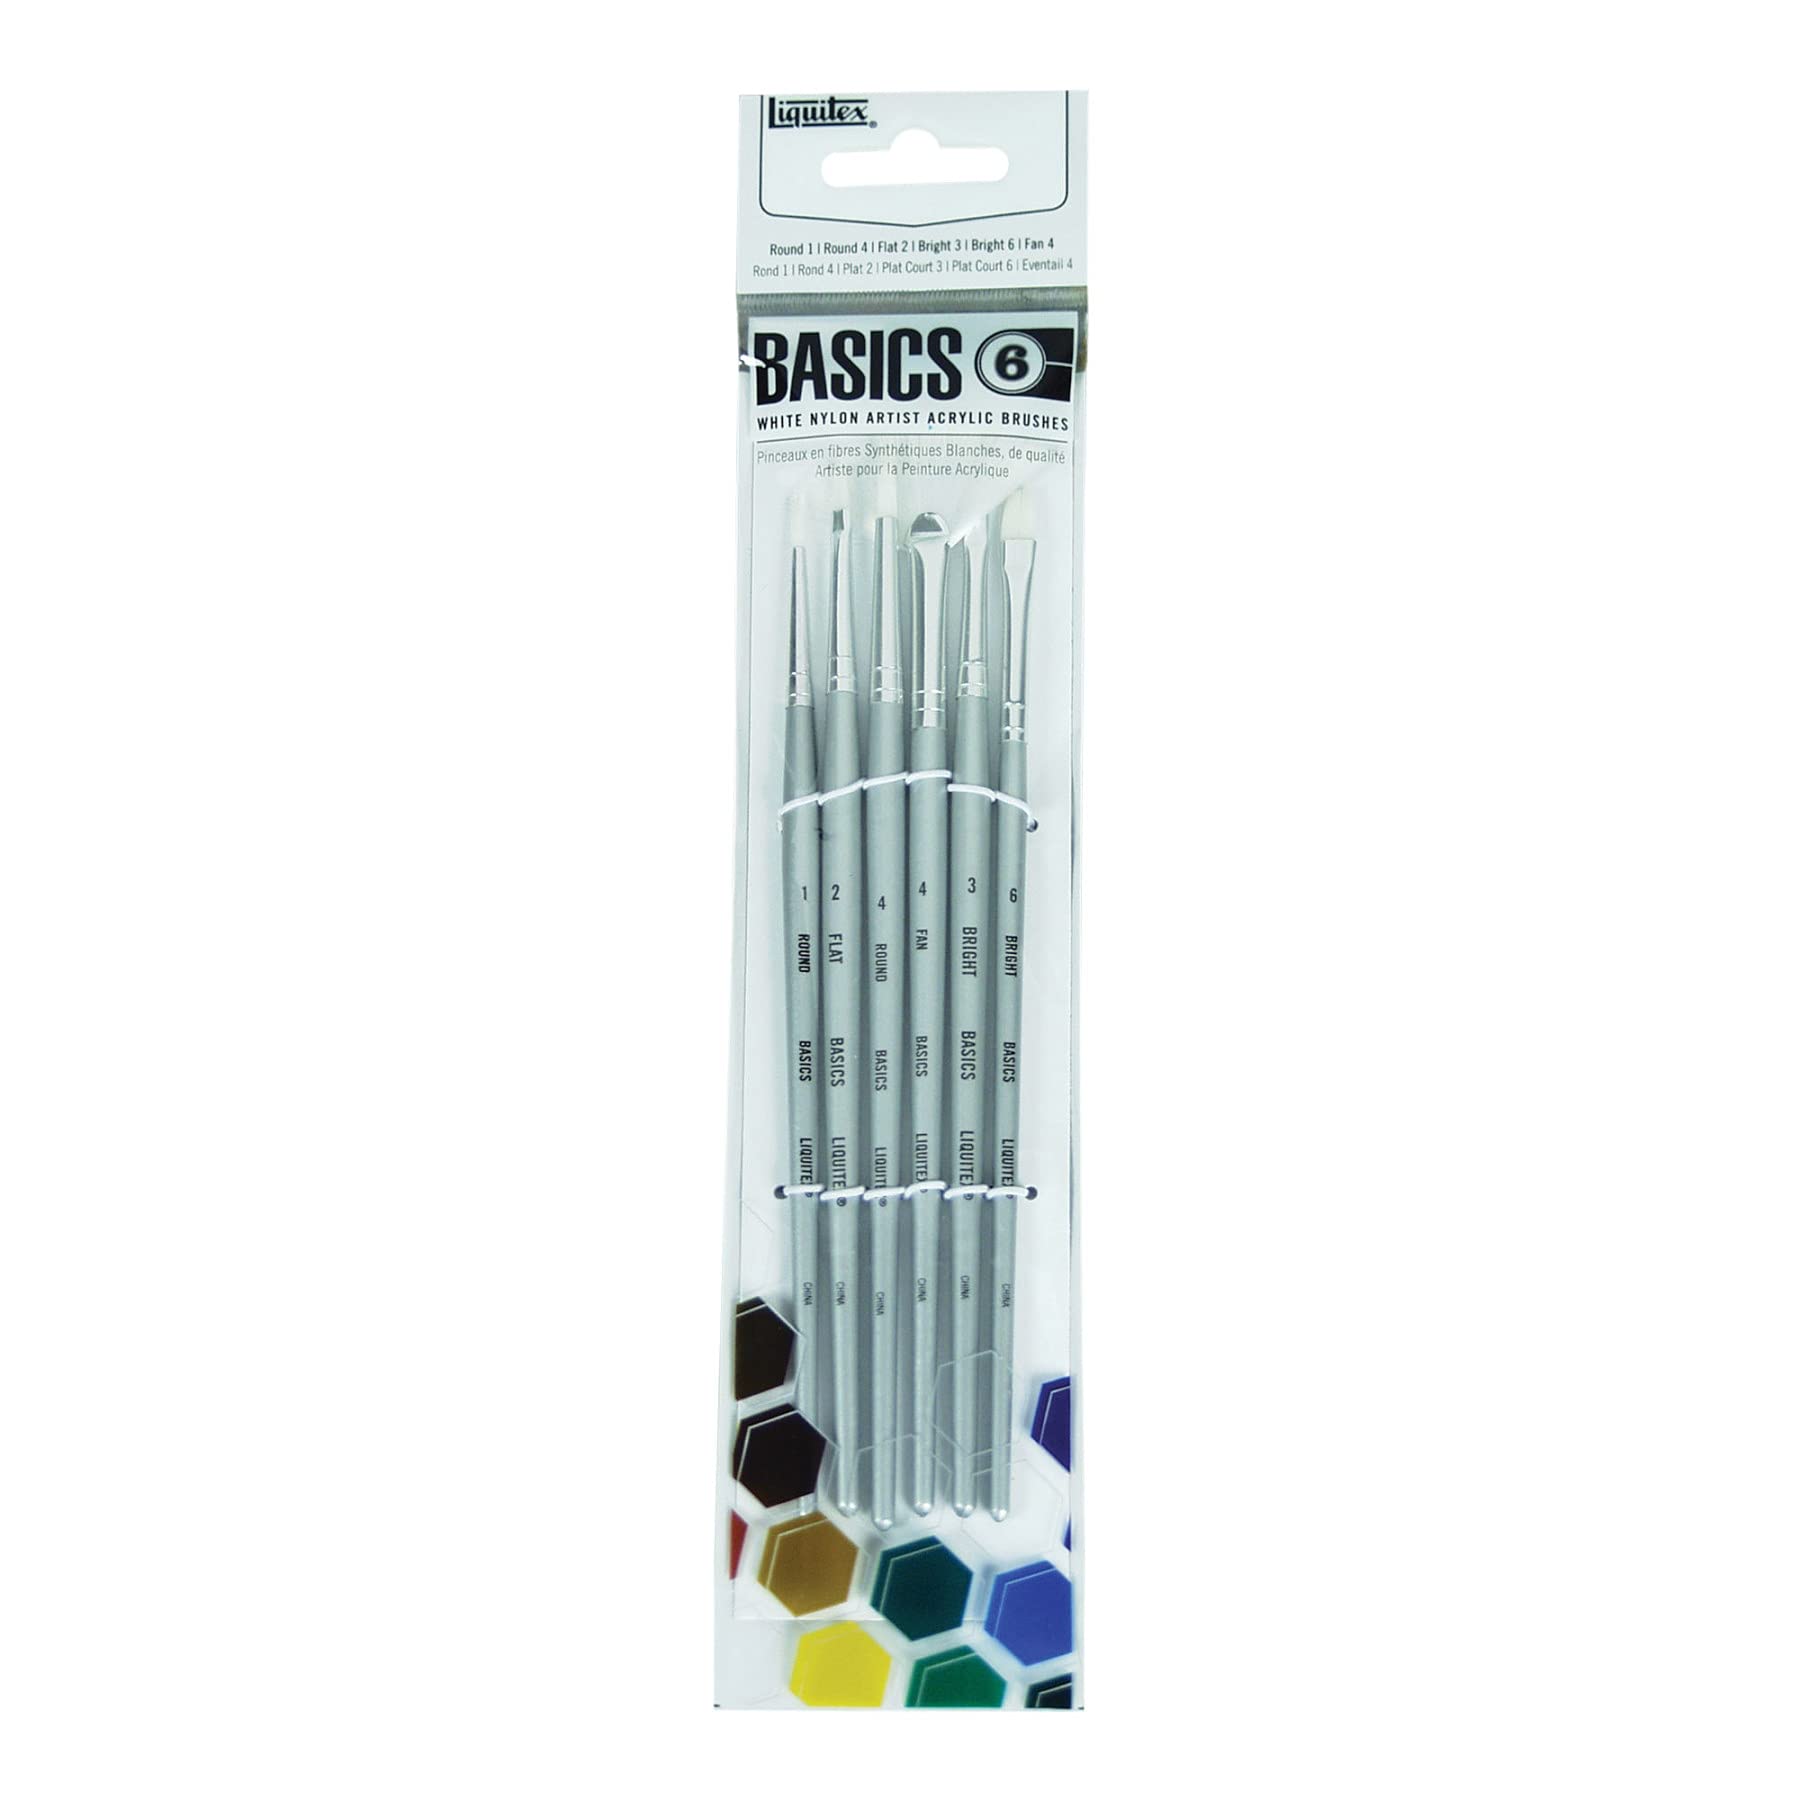 Liquitex white nylon acrylic brushes